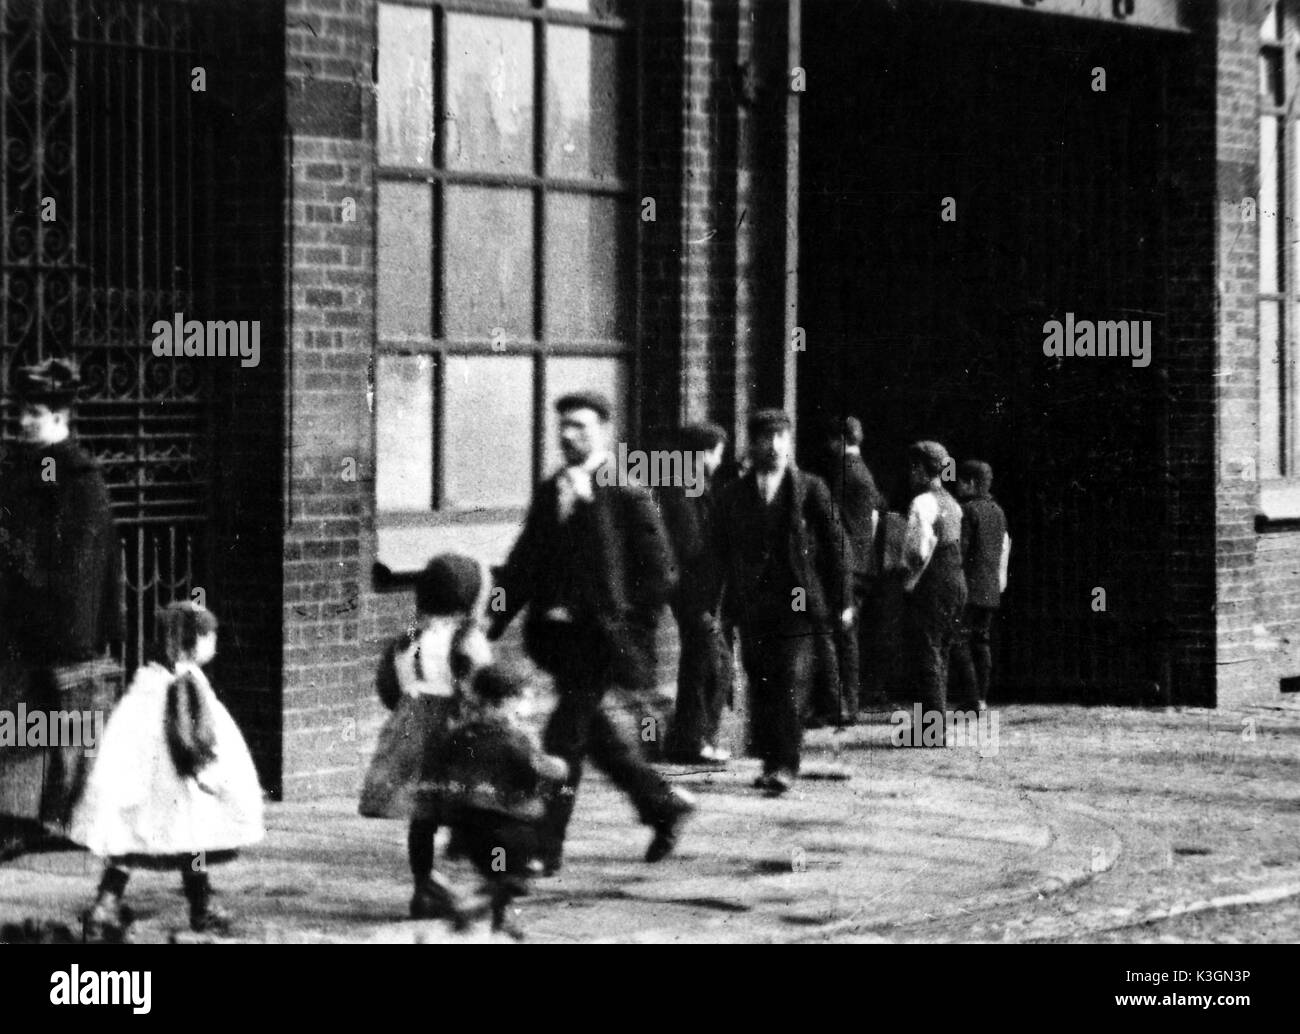 Un élargissement du cadre d'un film de travailleurs qui quittent la Brighton travaux ferroviaires, faite par GEORGE ALBERT SMITH l'Hove pionniers du cinéma, probablement en 1896. Il peut être comparé avec le célèbre film réalisé par les frères Lumière montrant les travailleurs quittant leur usine à Lyon en 1895 Banque D'Images